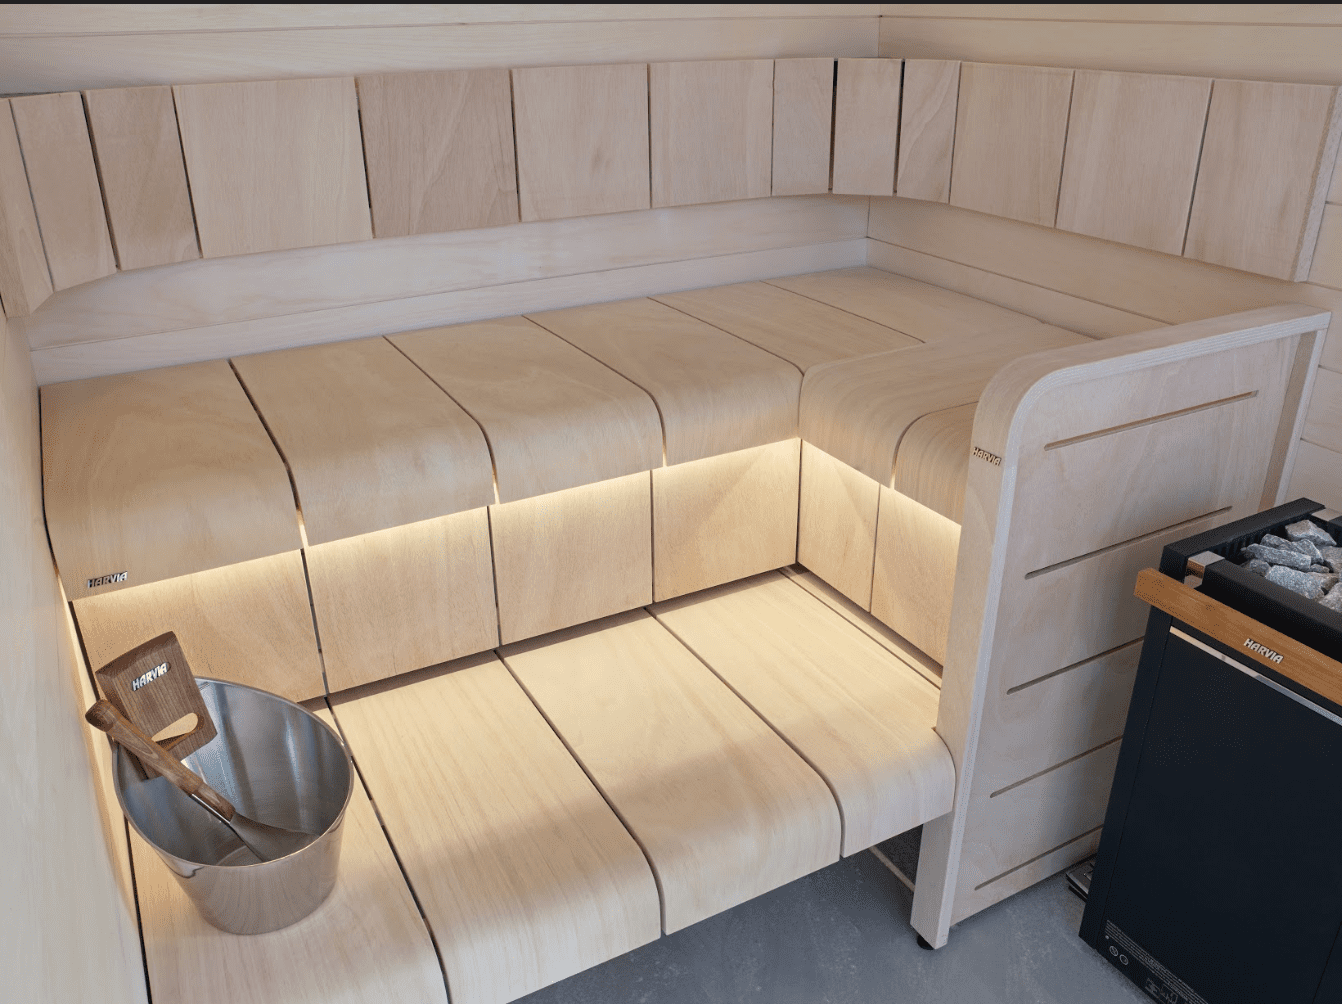 installing an outdoor sauna